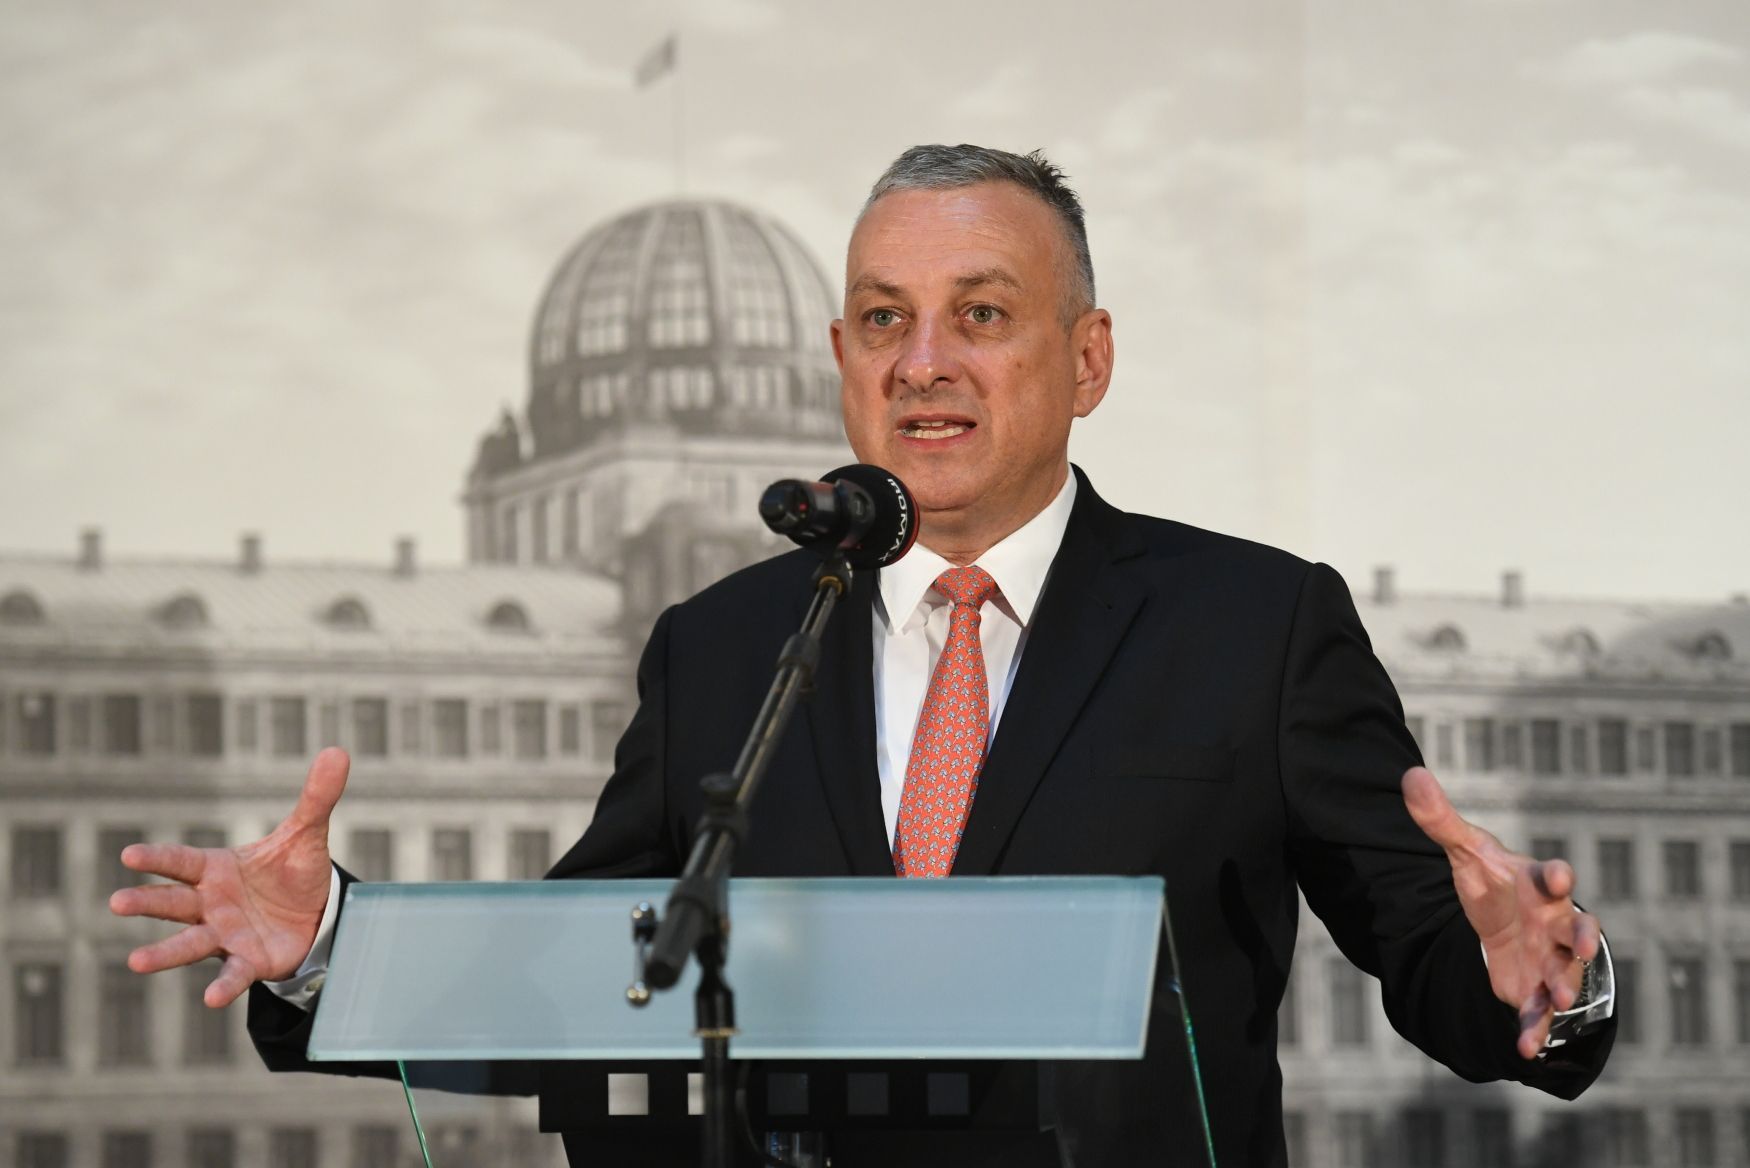 Ministr průmyslu a obchodu Jozef Síkela (za STAN).